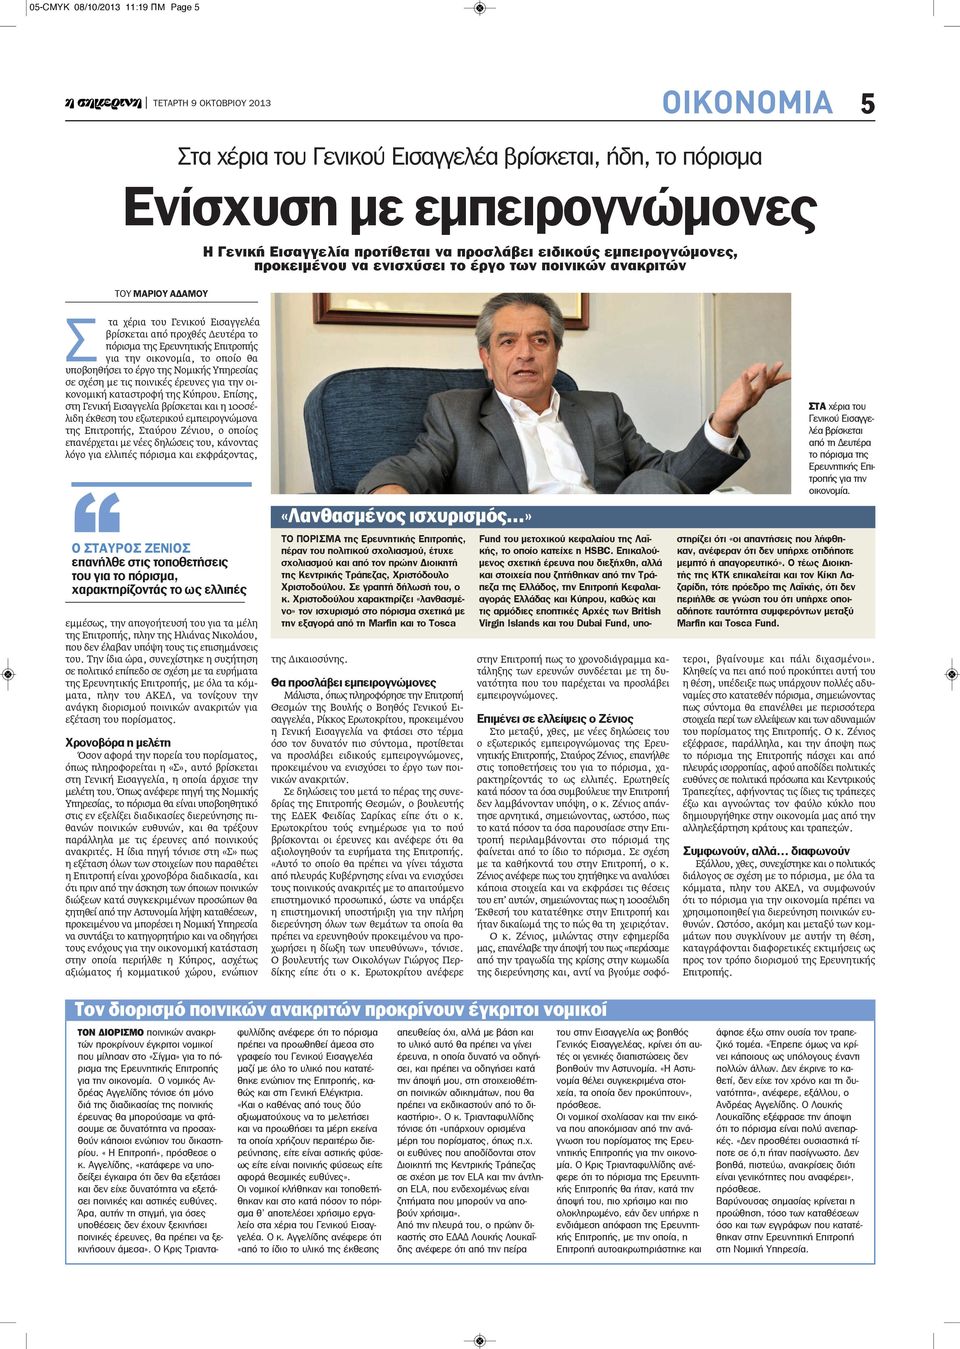 οικονομία, το οποίο θα υποβοηθήσει το έργο της Νομικής Υπηρεσίας σε σχέση με τις ποινικές έρευνες για την οικονομική καταστροφή της Κύπρου.